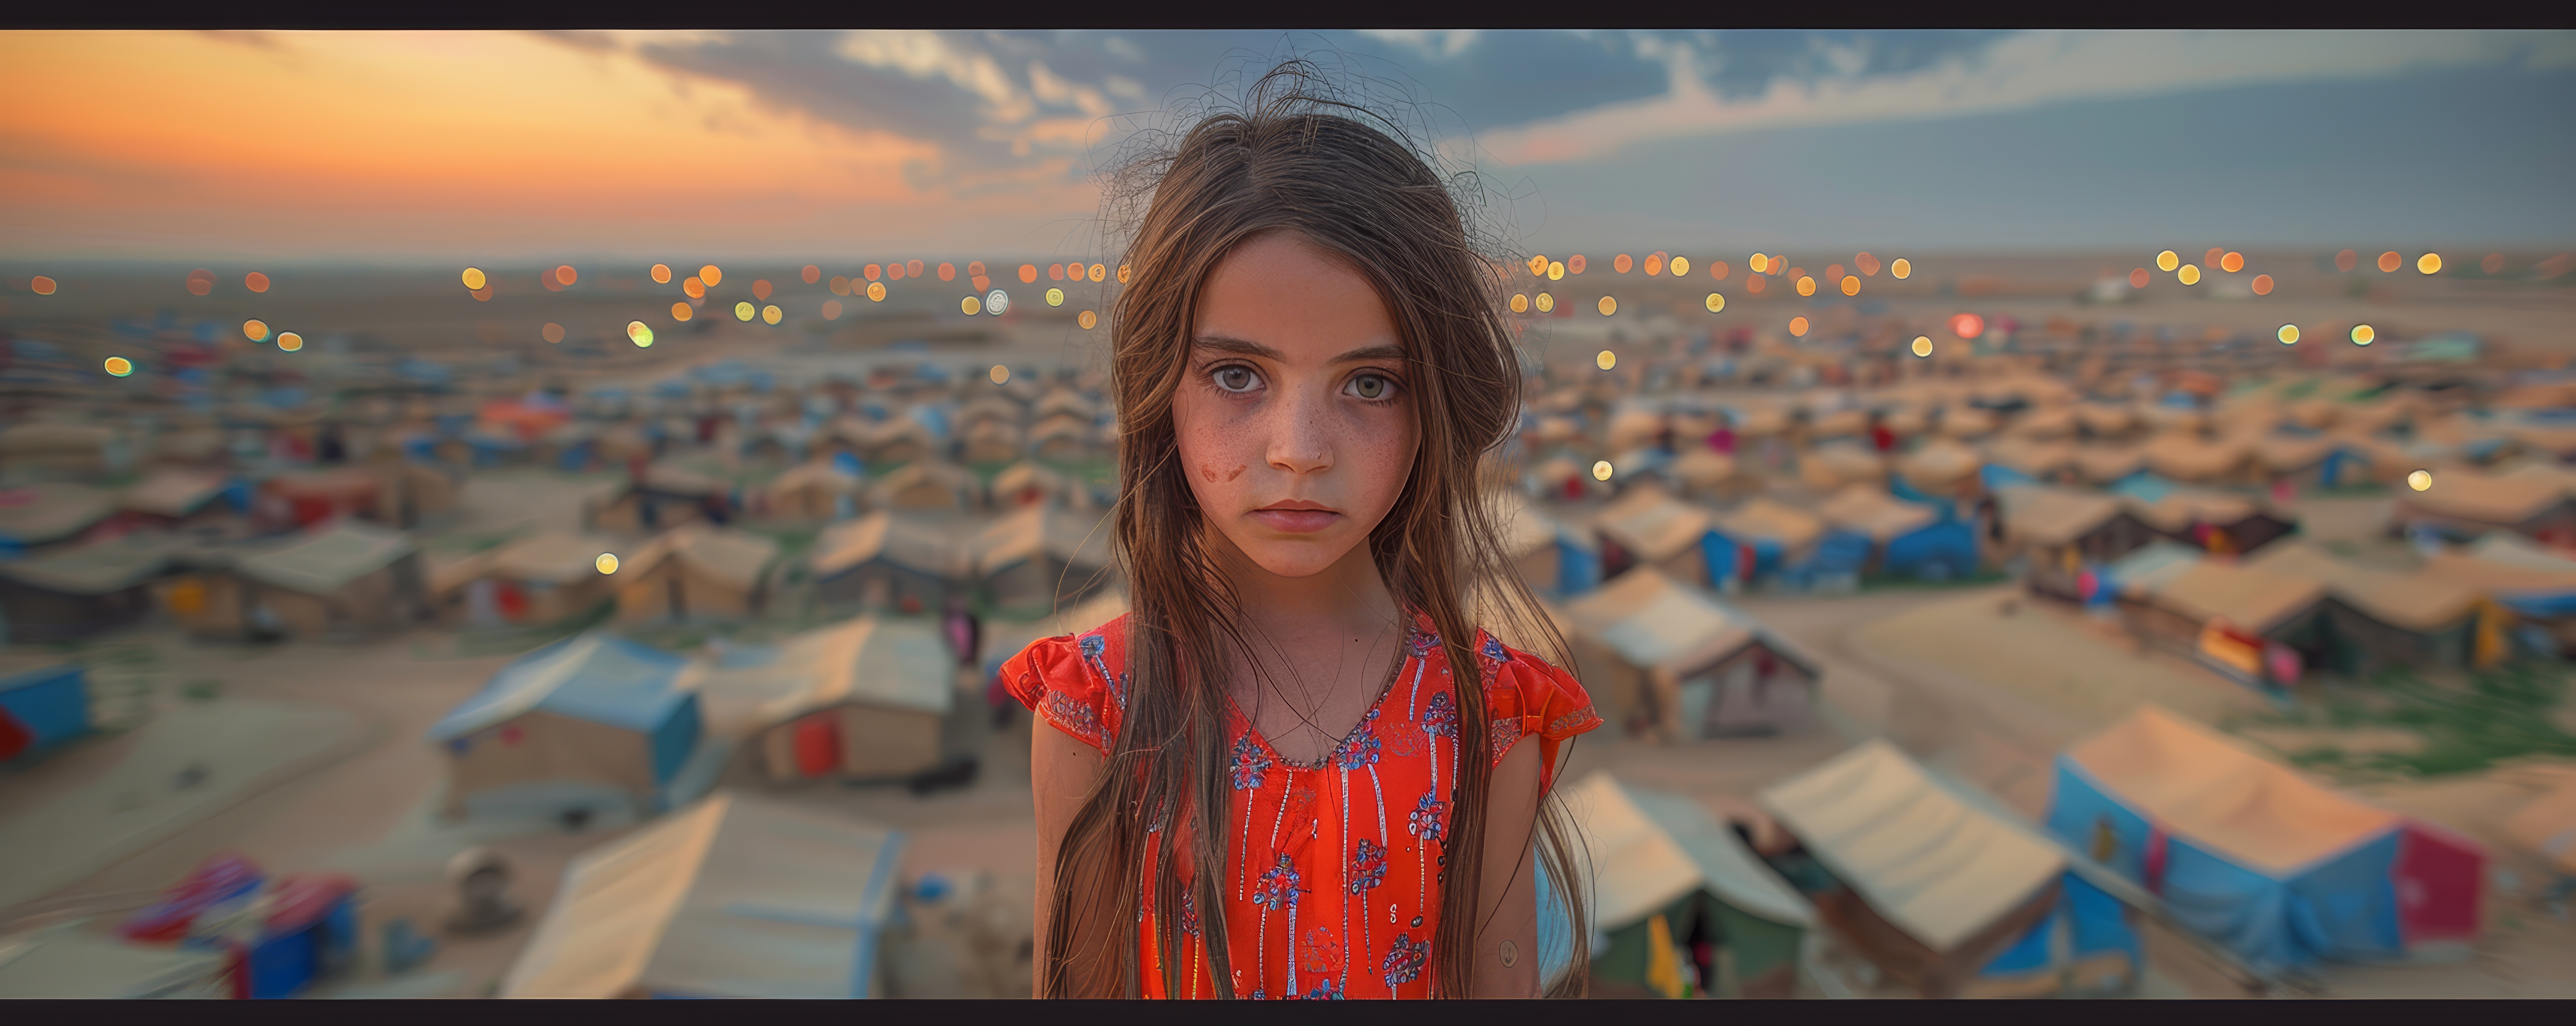 refugee girl